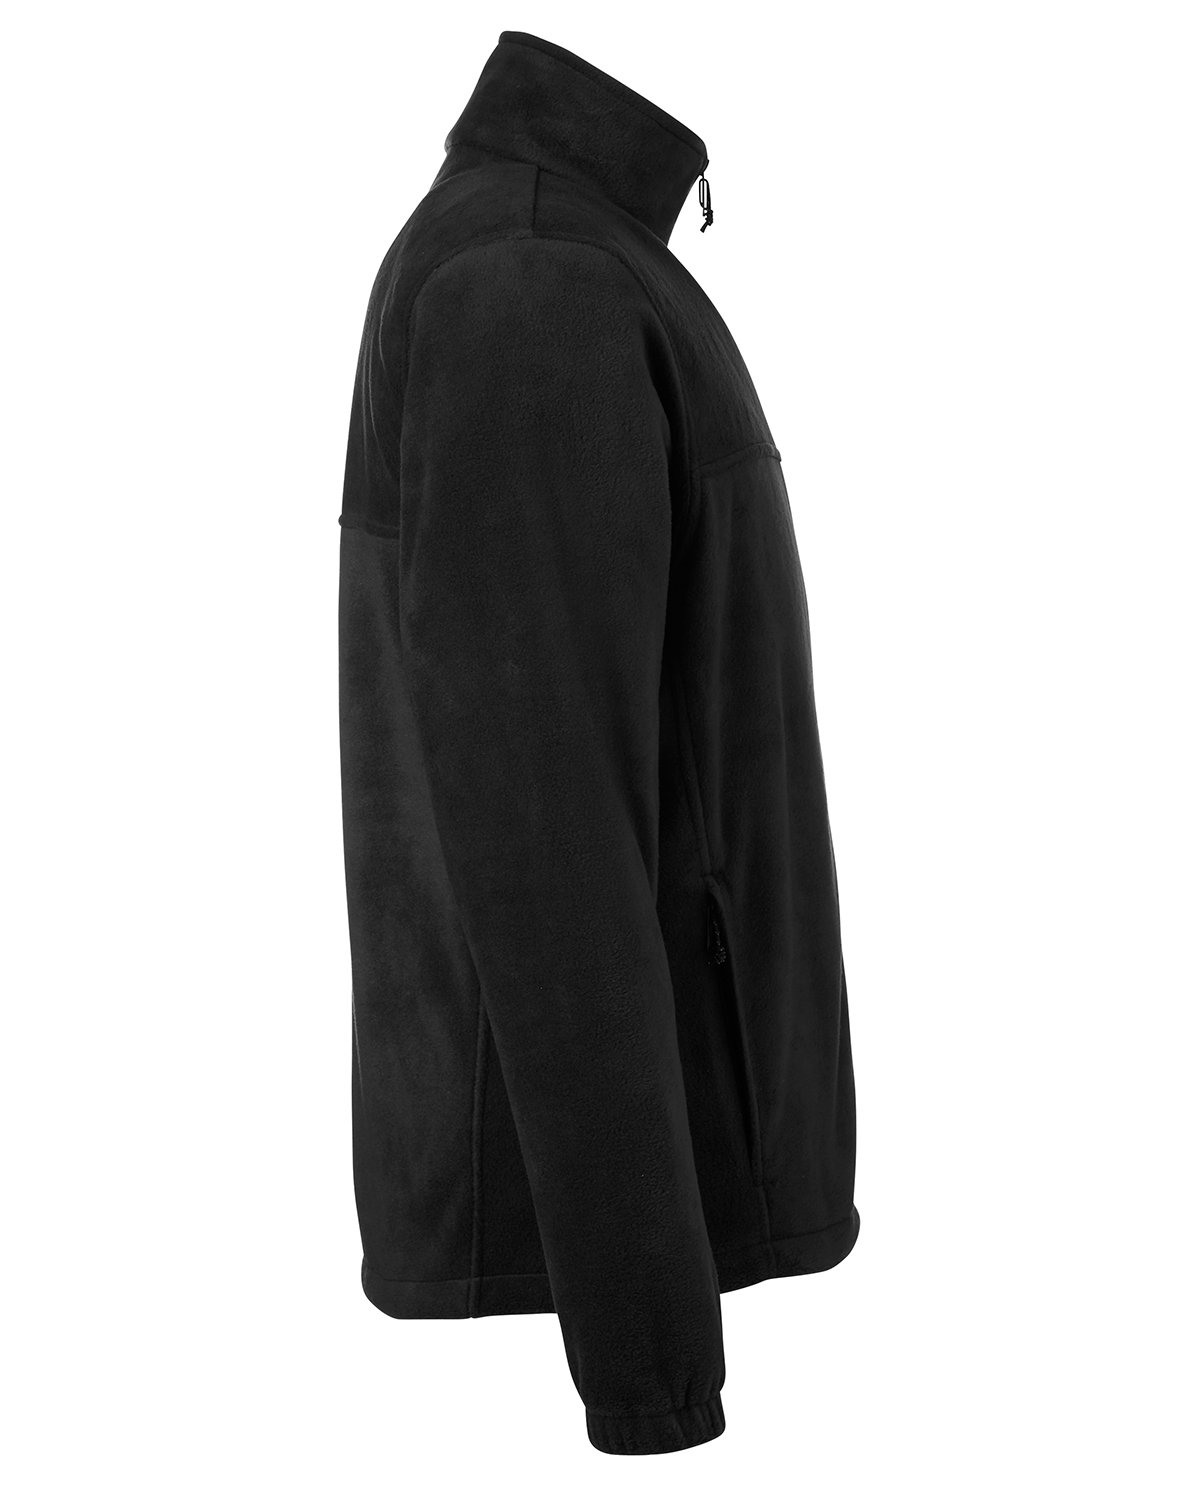 All In Motion Polartec Fleece Jacket Black 2XL Mens Full Zip Pockets  82099833 